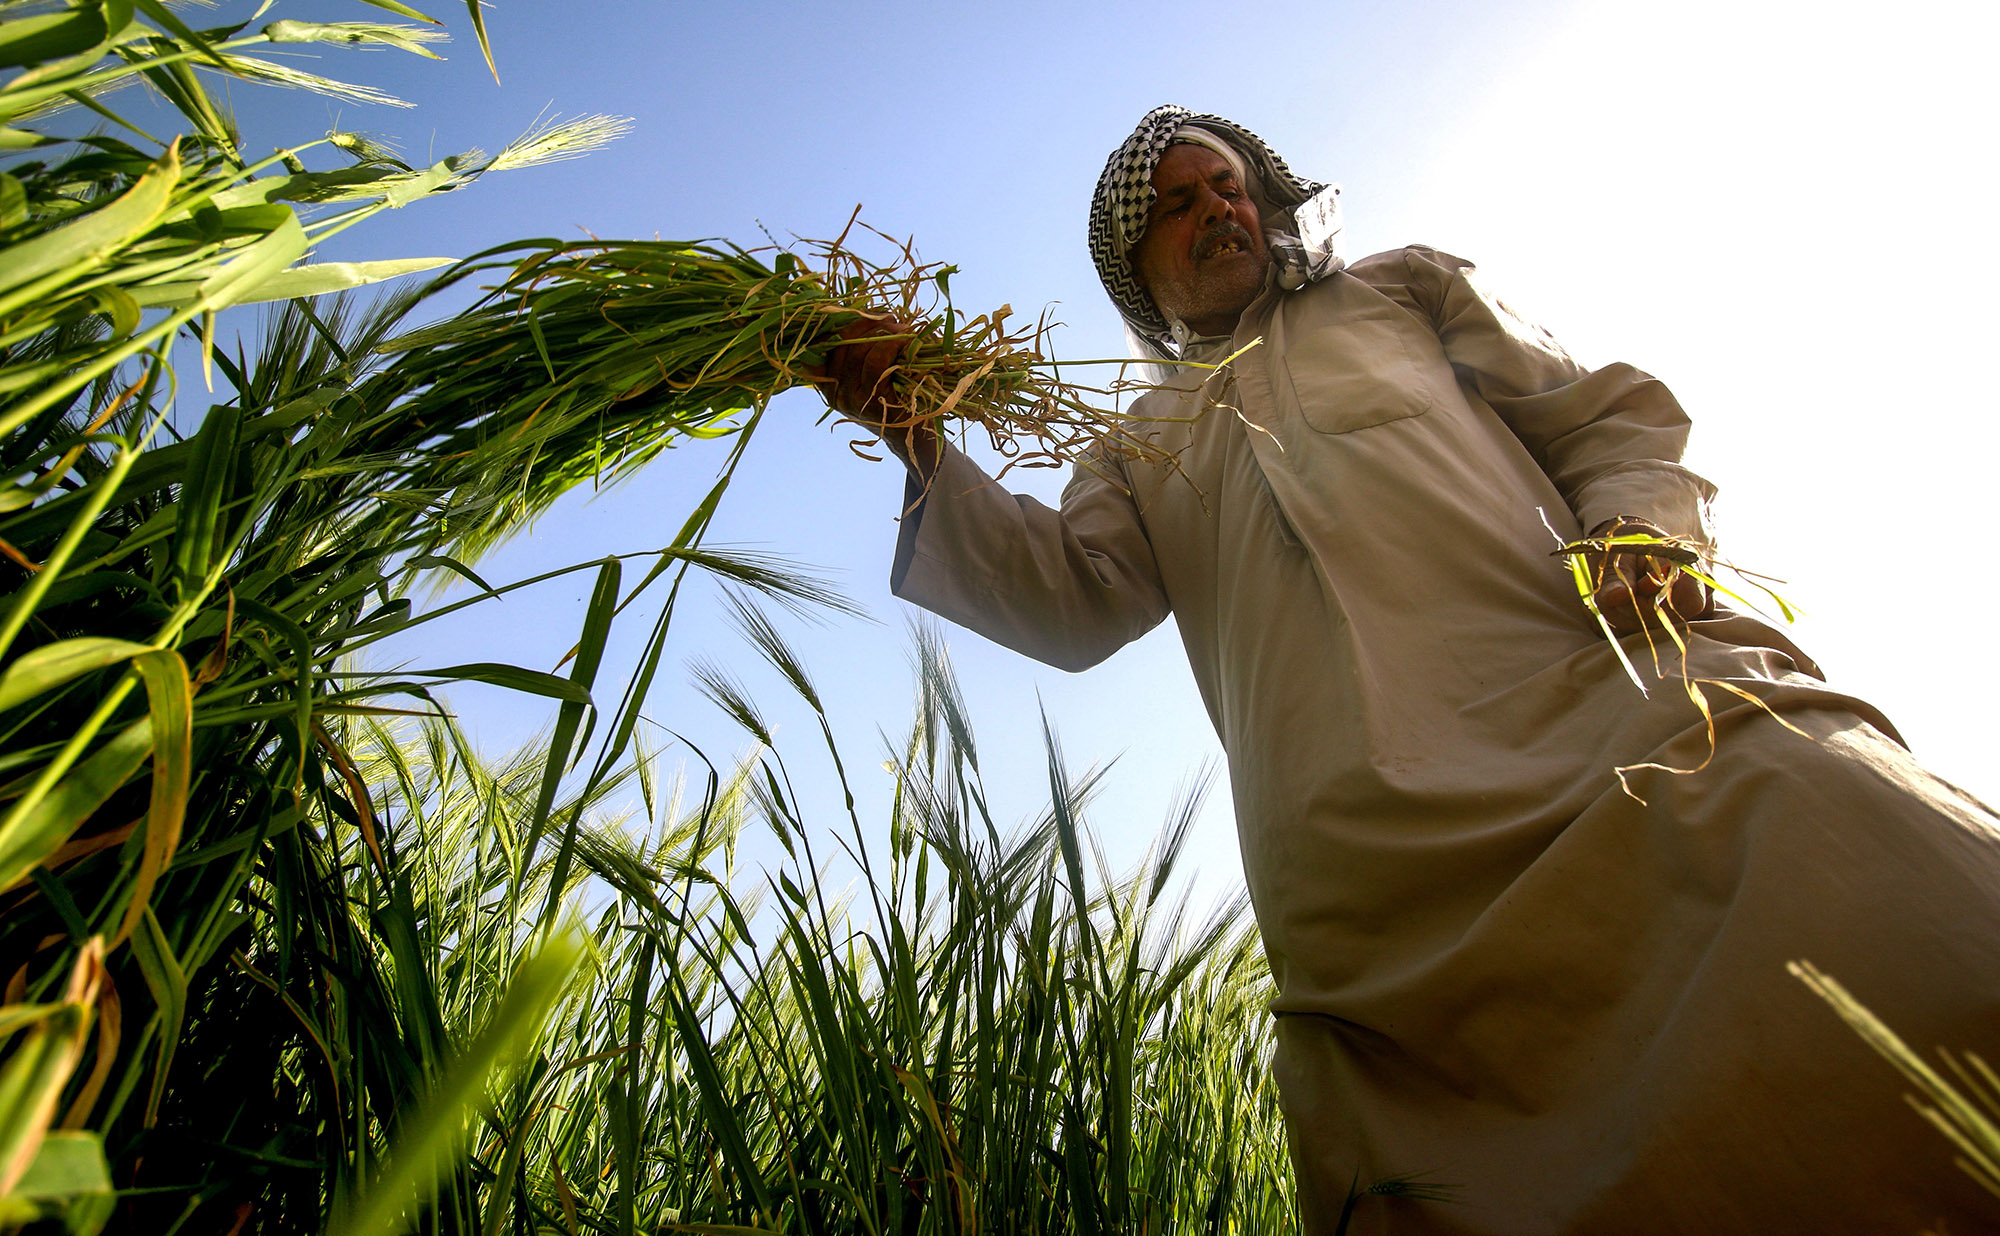 Barley harvest south of Baghdad.